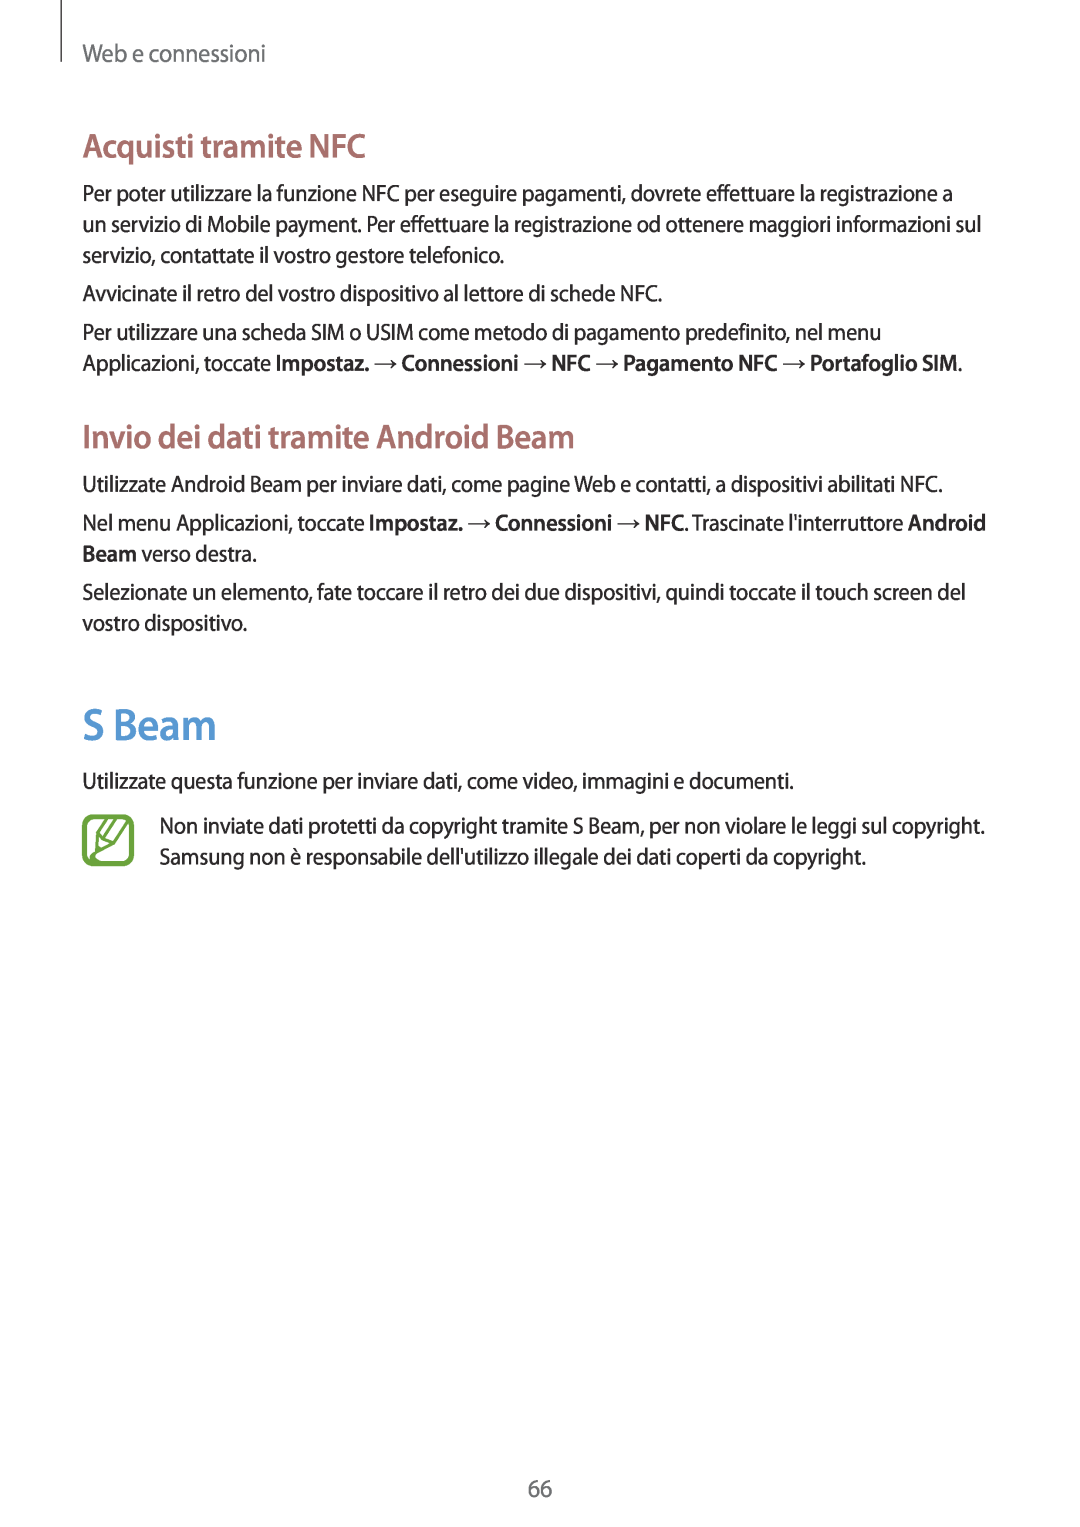 Samsung GT-I9195ZOAITV manual S Beam, Acquisti tramite NFC, Invio dei dati tramite Android Beam, Web e connessioni 